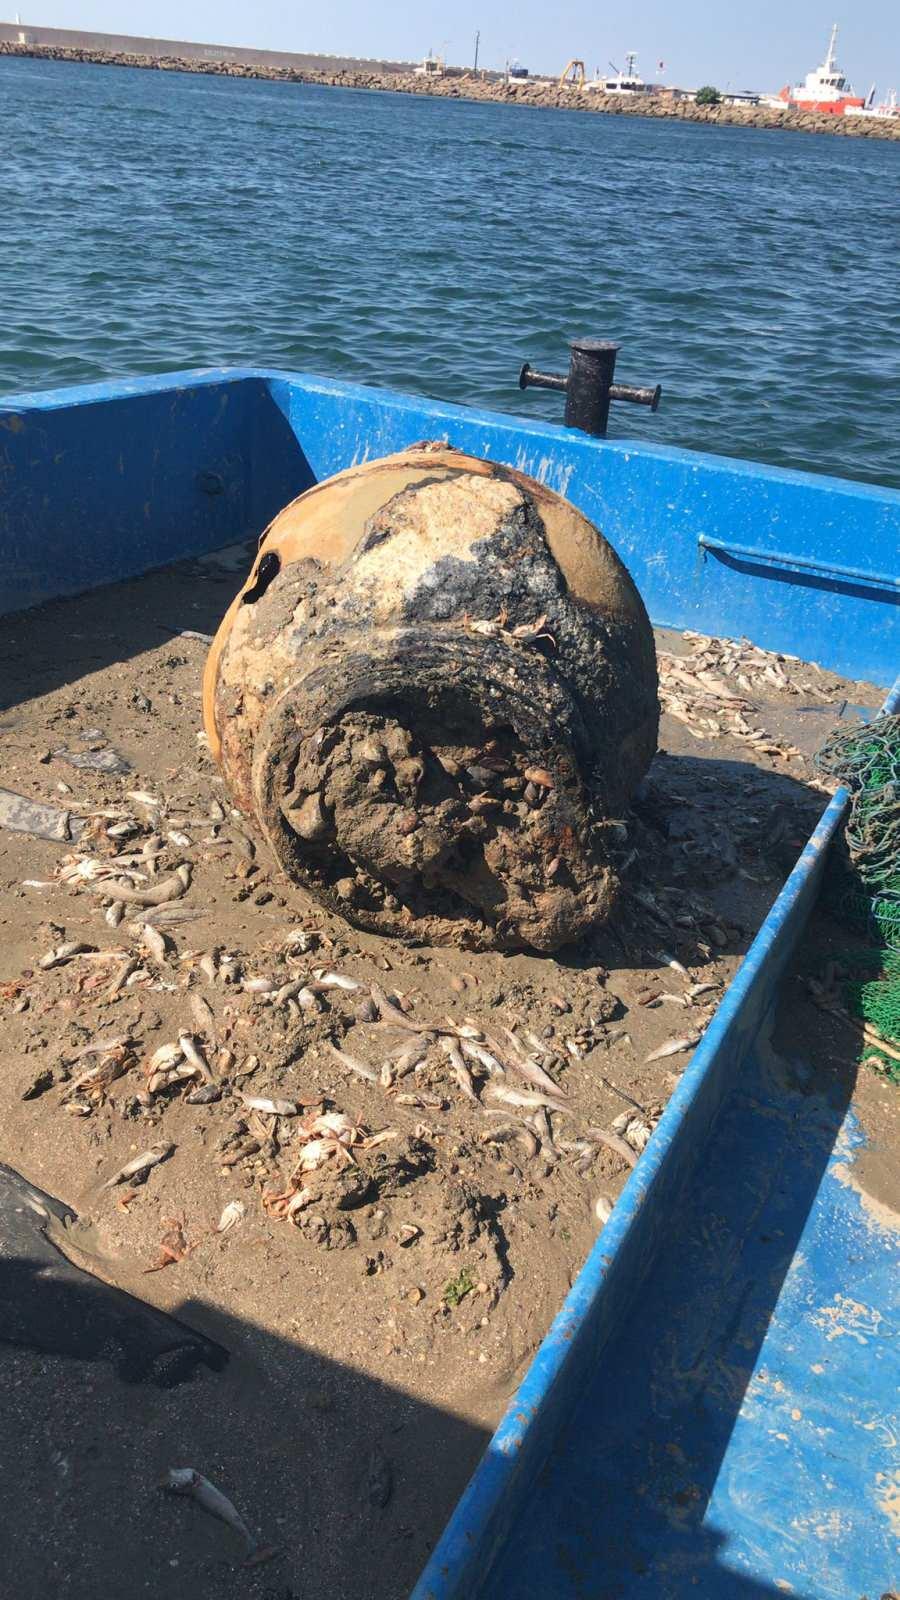 <p>Balıkçı teknesi polis ve sahil güvenlik ekiplerin eşliğinde Poyrazköy limanına çekildi. Mayının incelenmesi için bomba imha uzmanları çağırıldı. Bomba imha uzmanlarının incelemesi sonrası mayının eski ve patlamış olduğu belirlendi.</p>
